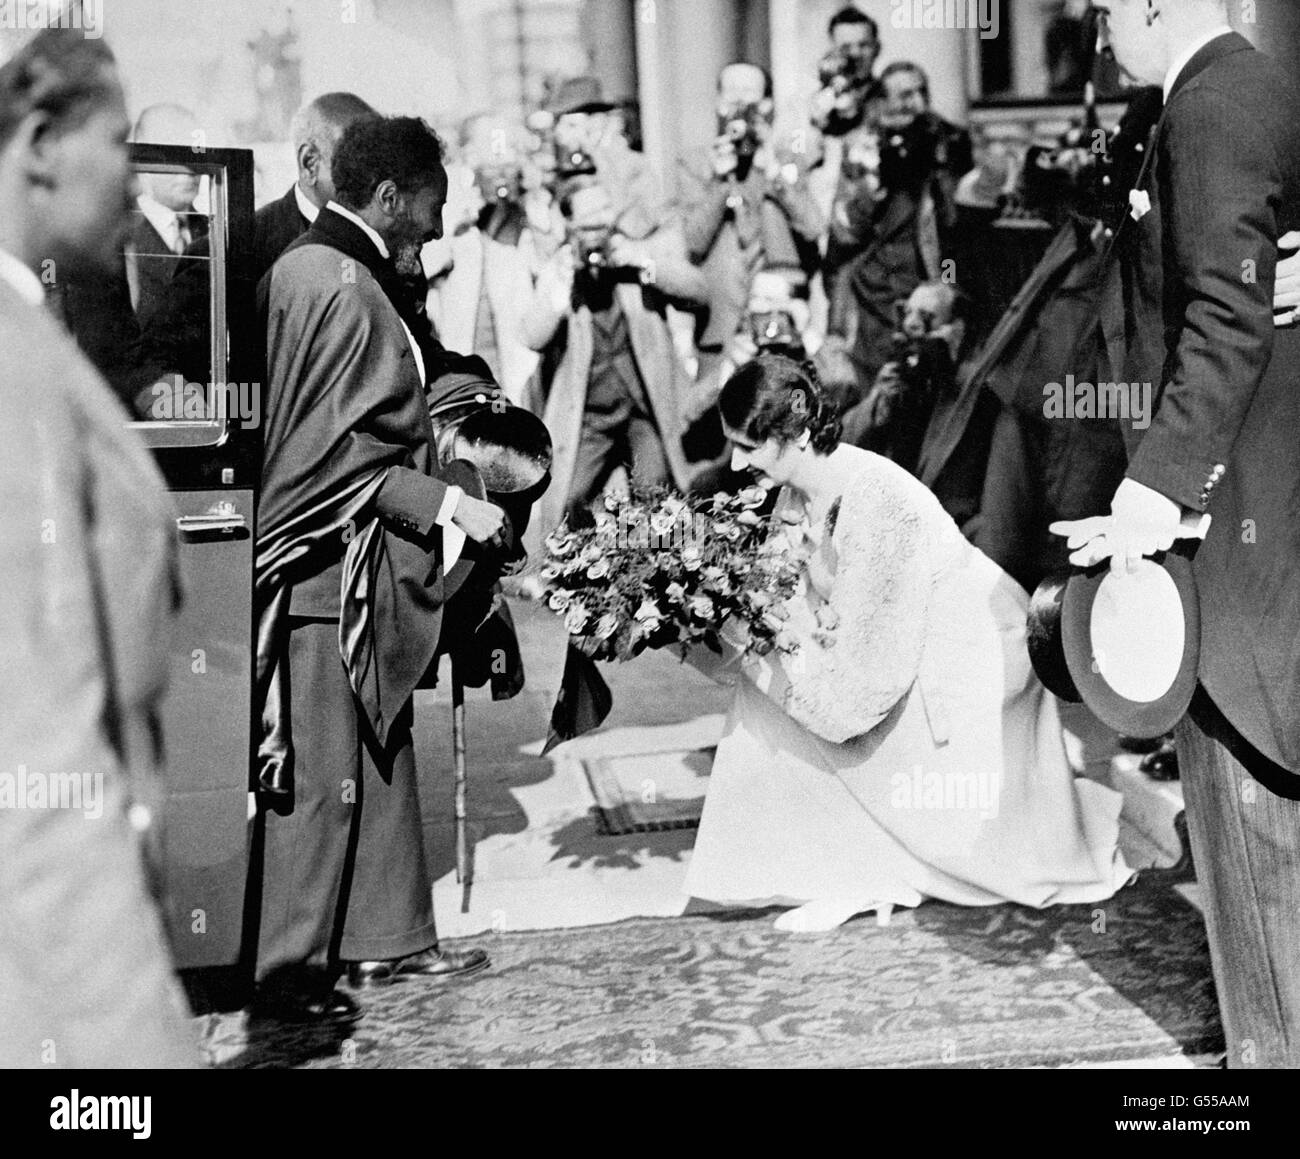 Dem Kaiser von Abessinien (Äthiopien), Haile Selassie, wird bei einem Besuch in Großbritannien ein Blumenstrauß überreicht. Im Oktober 1935 drangen italienische Truppen in sein Land ein, worauf Mussolini den König von Italien zum Kaiser von Abessinien erklärte. Stockfoto